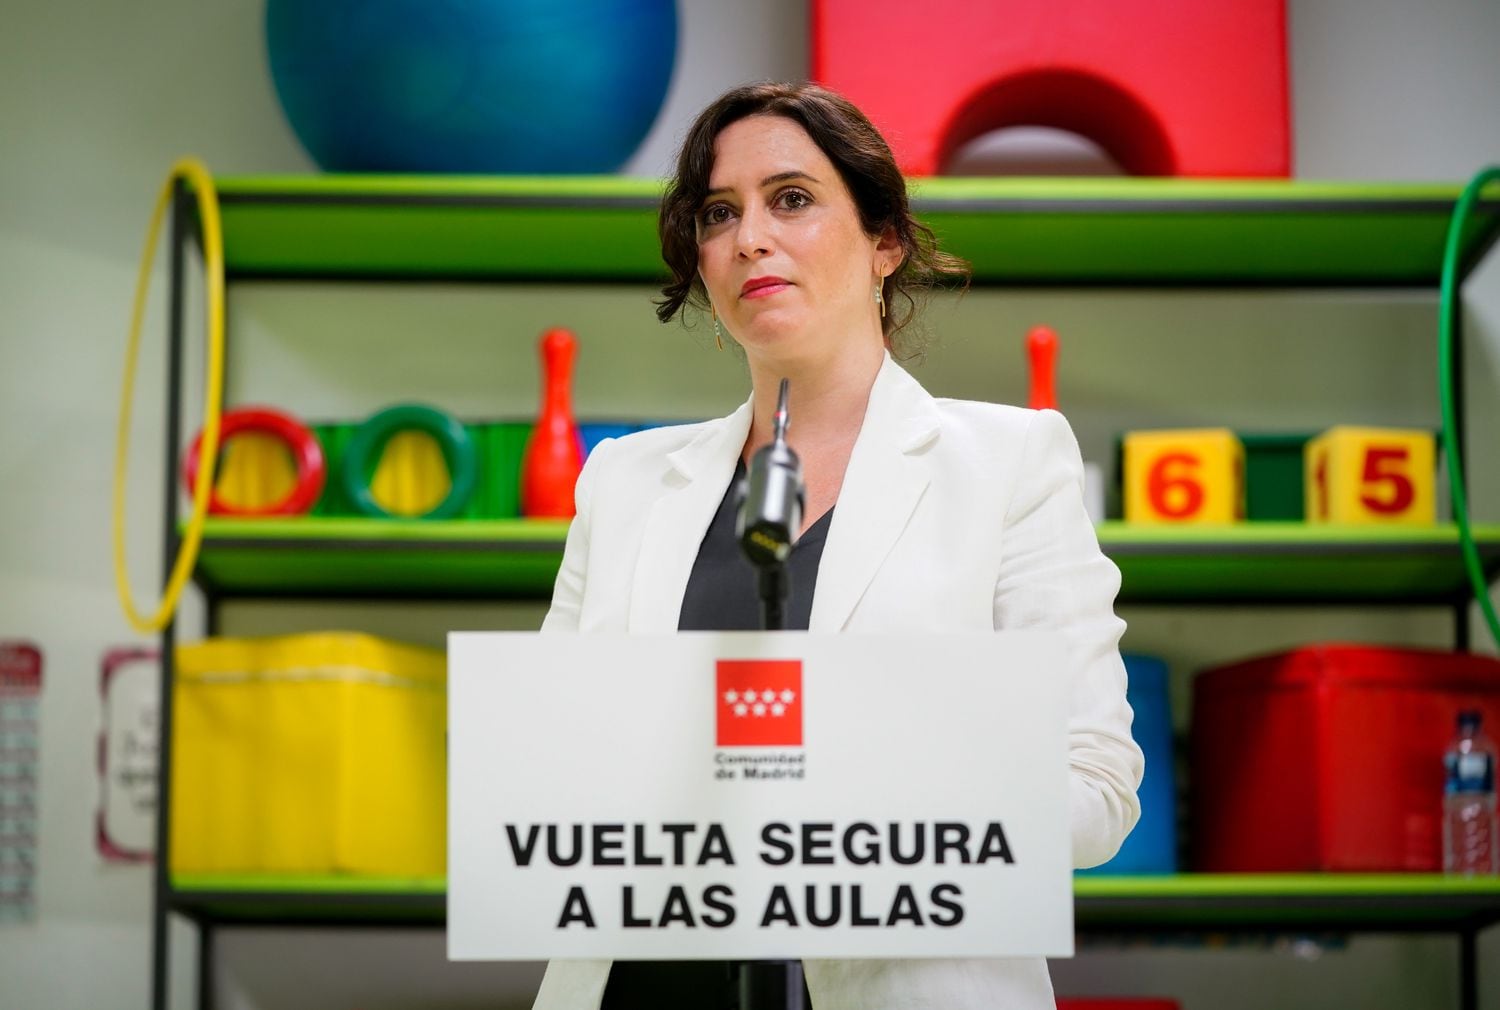 La presidenta de la Comunidad de Madrid, Isabel Díaz Ayuso, el lunes.